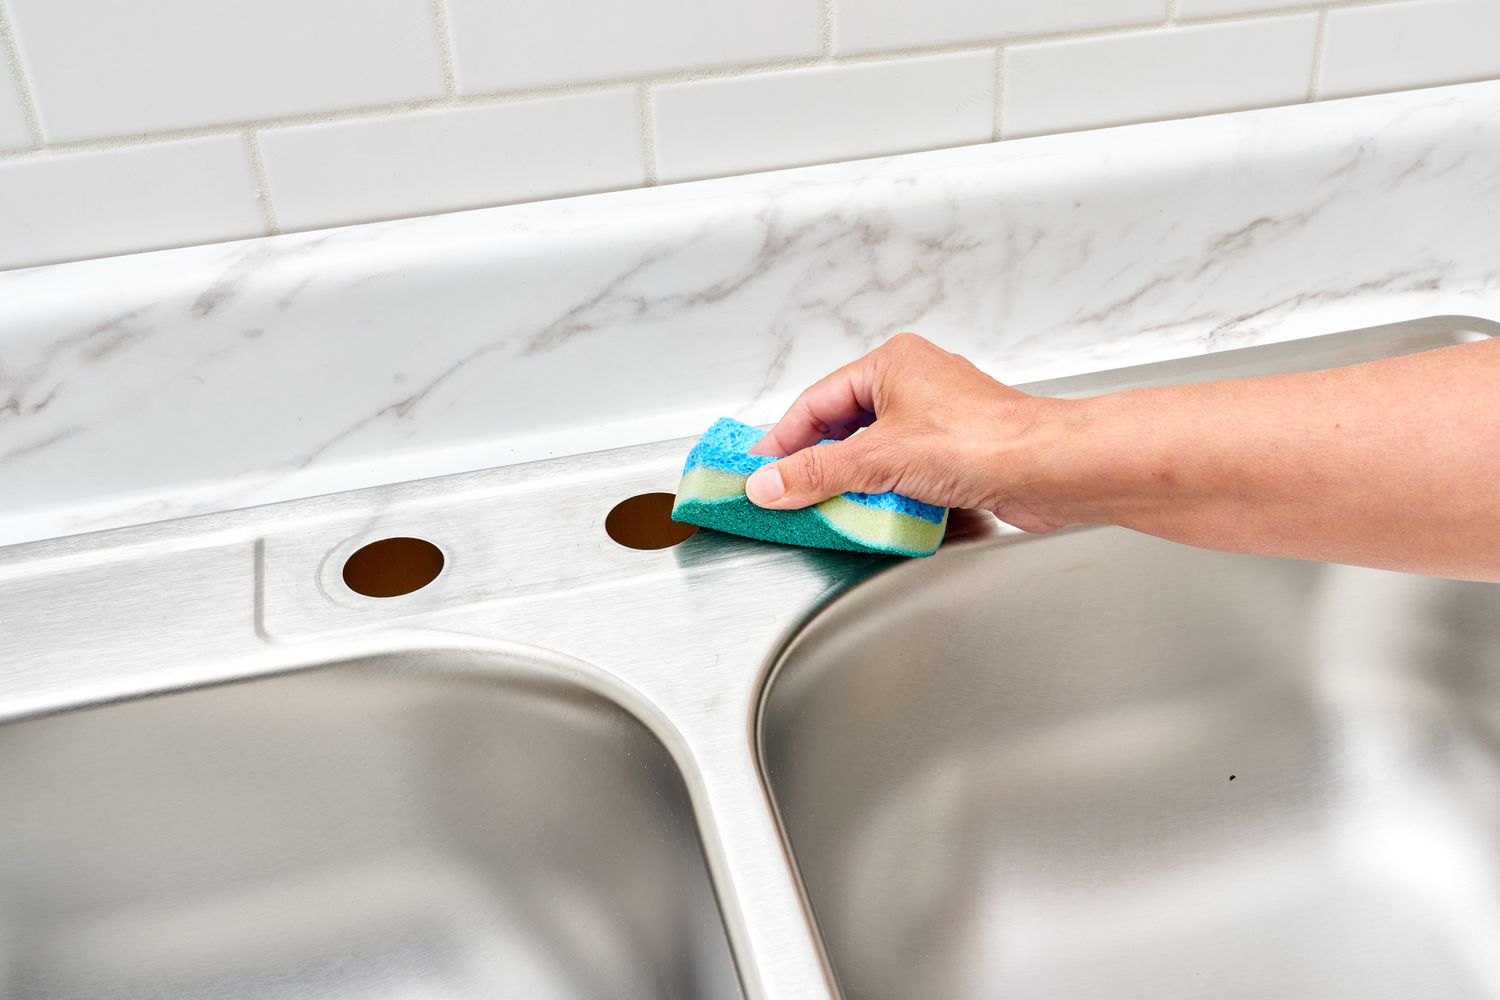 Trous de robinet vides nettoyés avec une éponge bleue sur l'évier de cuisine